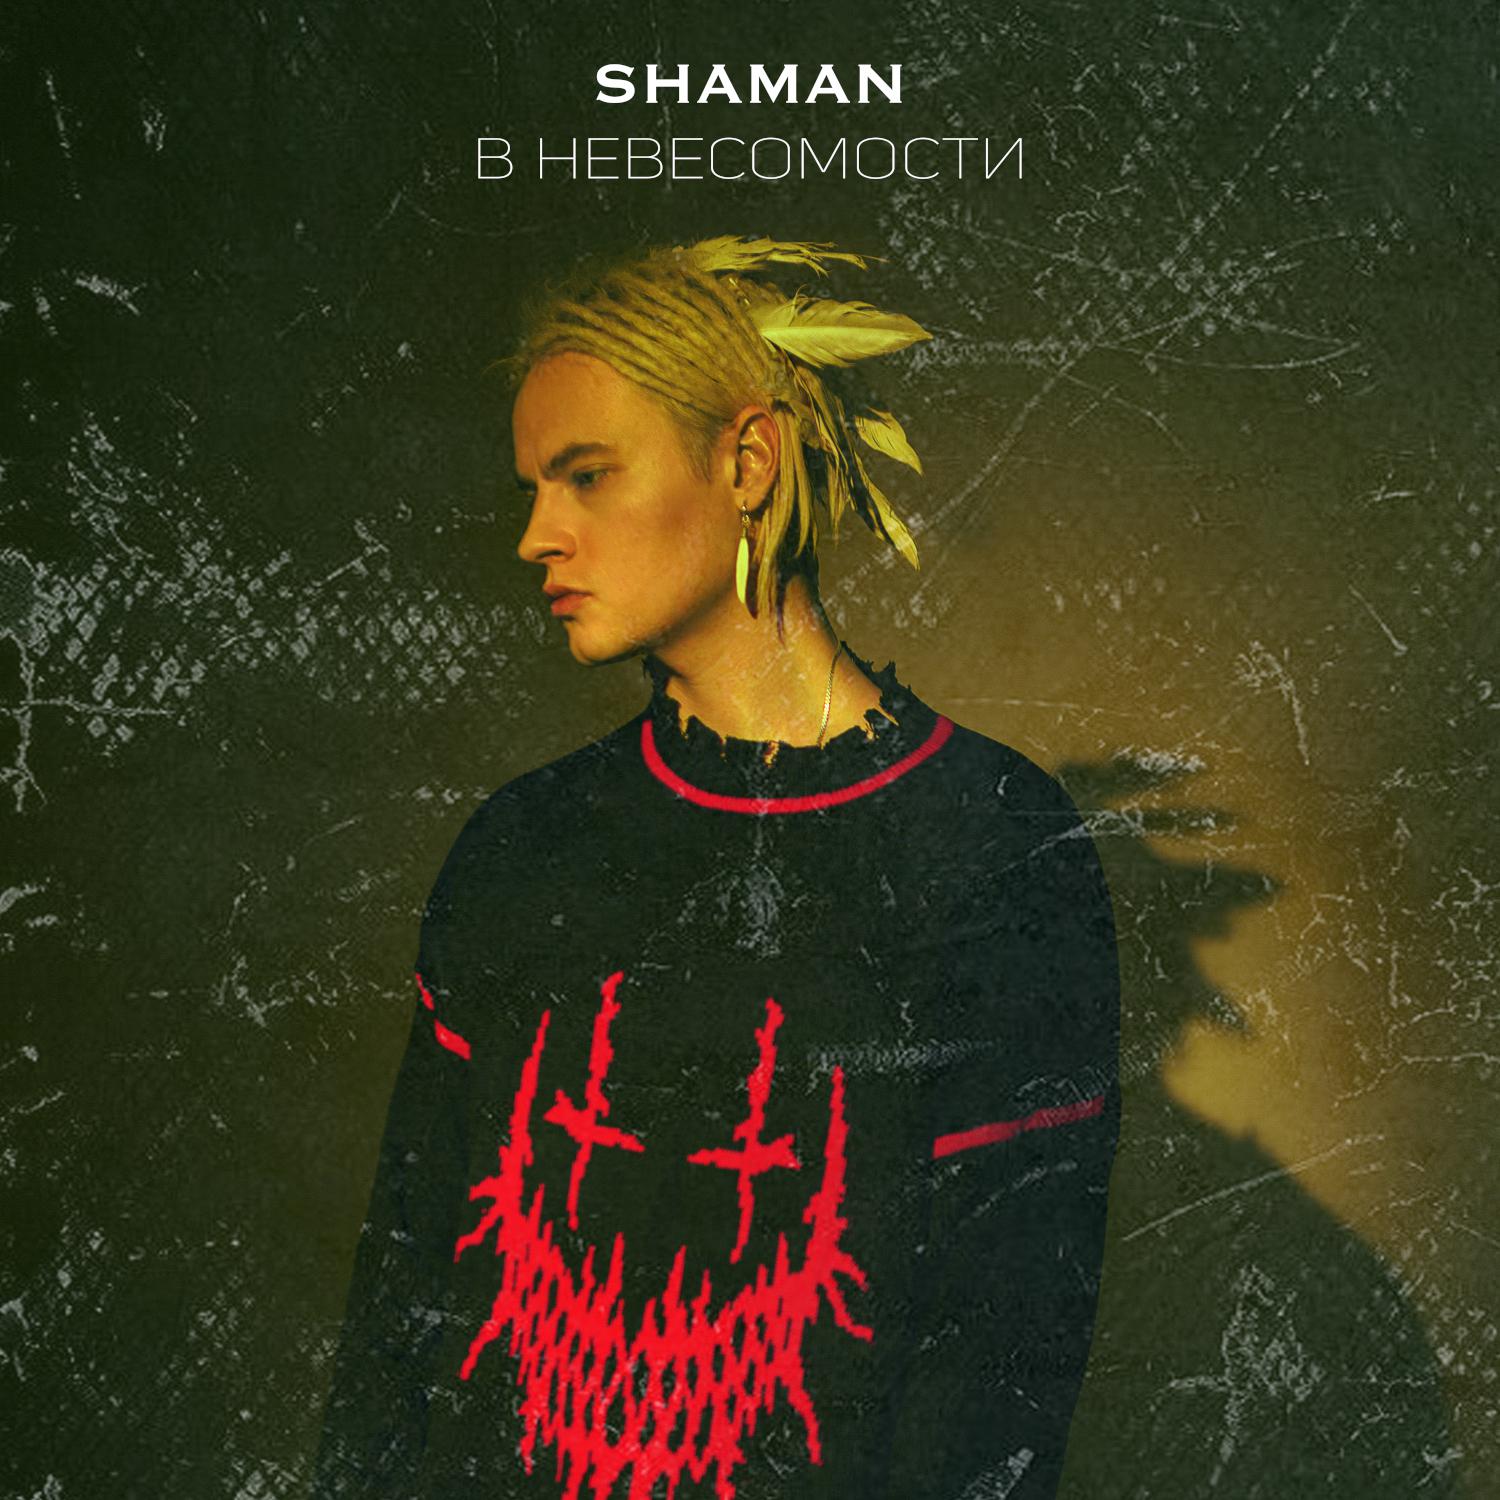 Новый певец шаман песни слушать. Shaman (певец). Шаман певец обложка. В невесомости Shaman. В невесомости Shaman обложка.